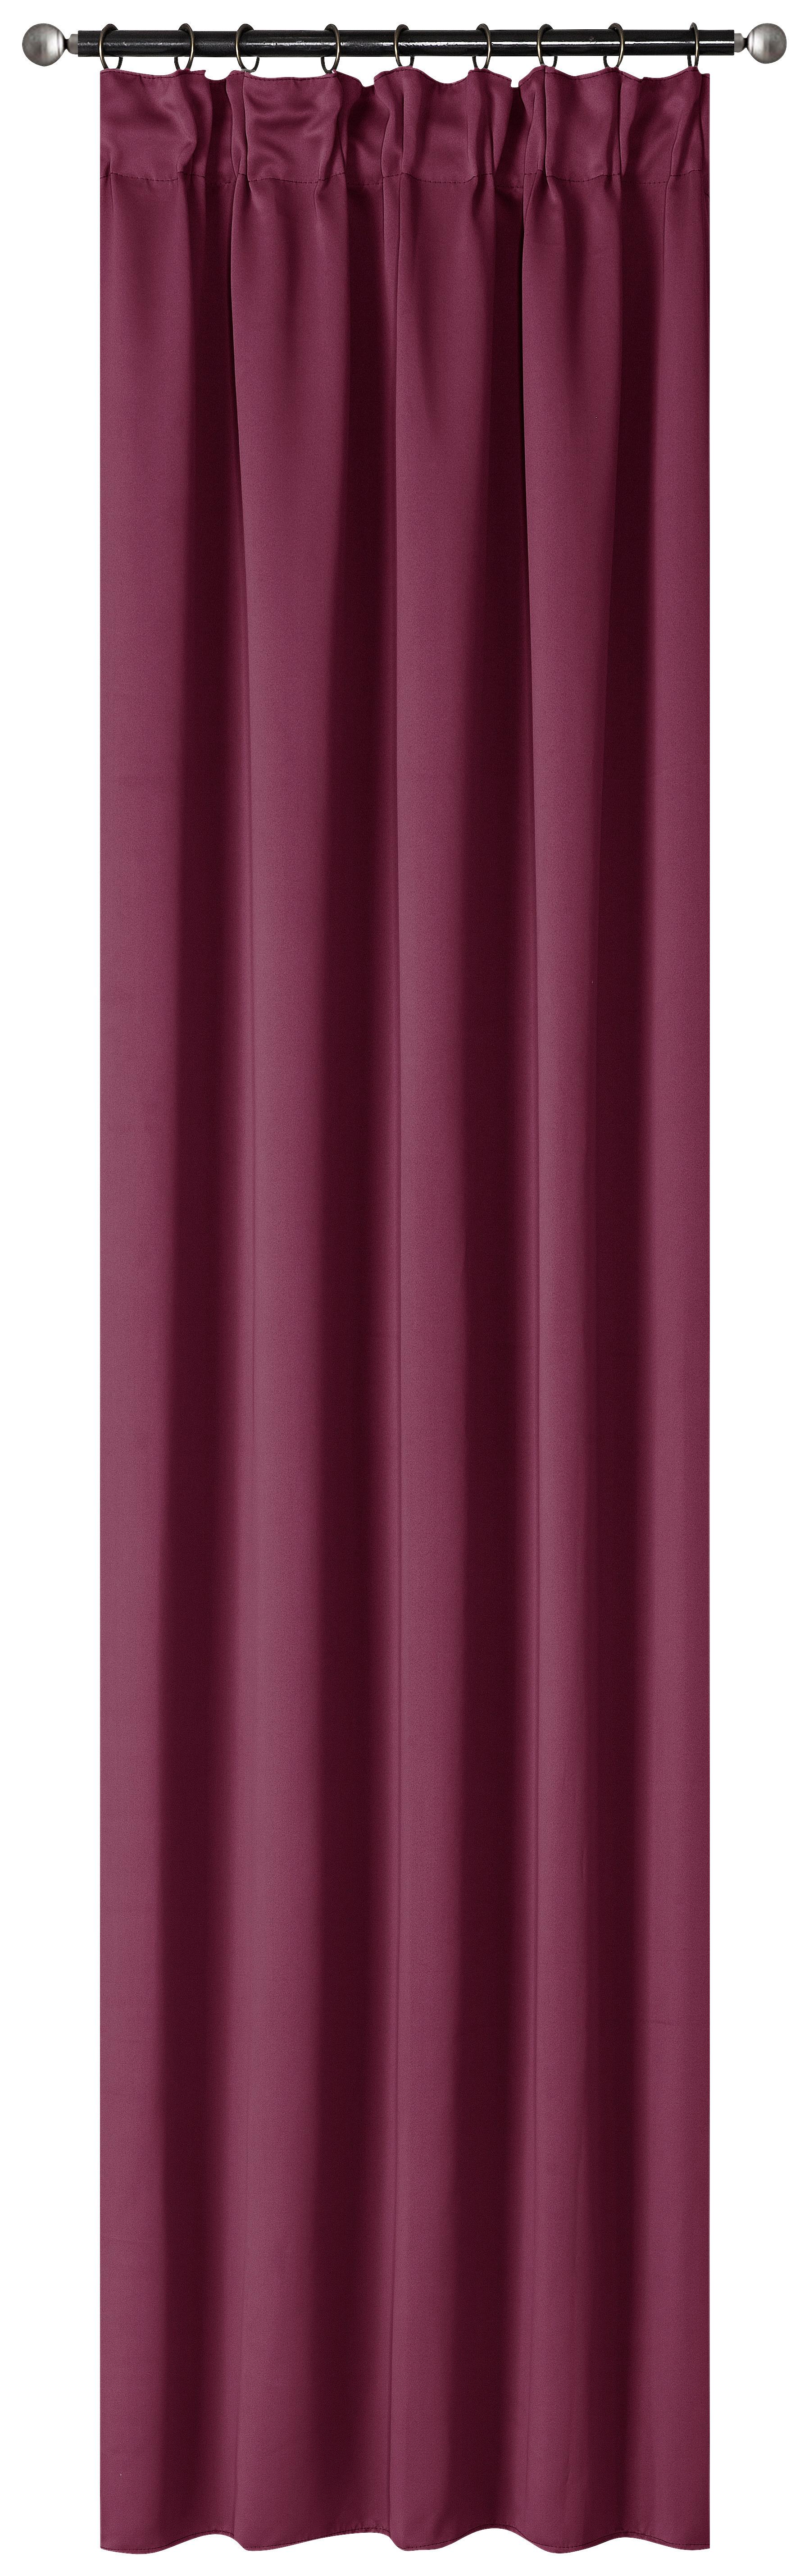 Vorhang mit Band Simone 135x245 cm Rot - Rot, ROMANTIK / LANDHAUS, Textil (135/245cm) - James Wood